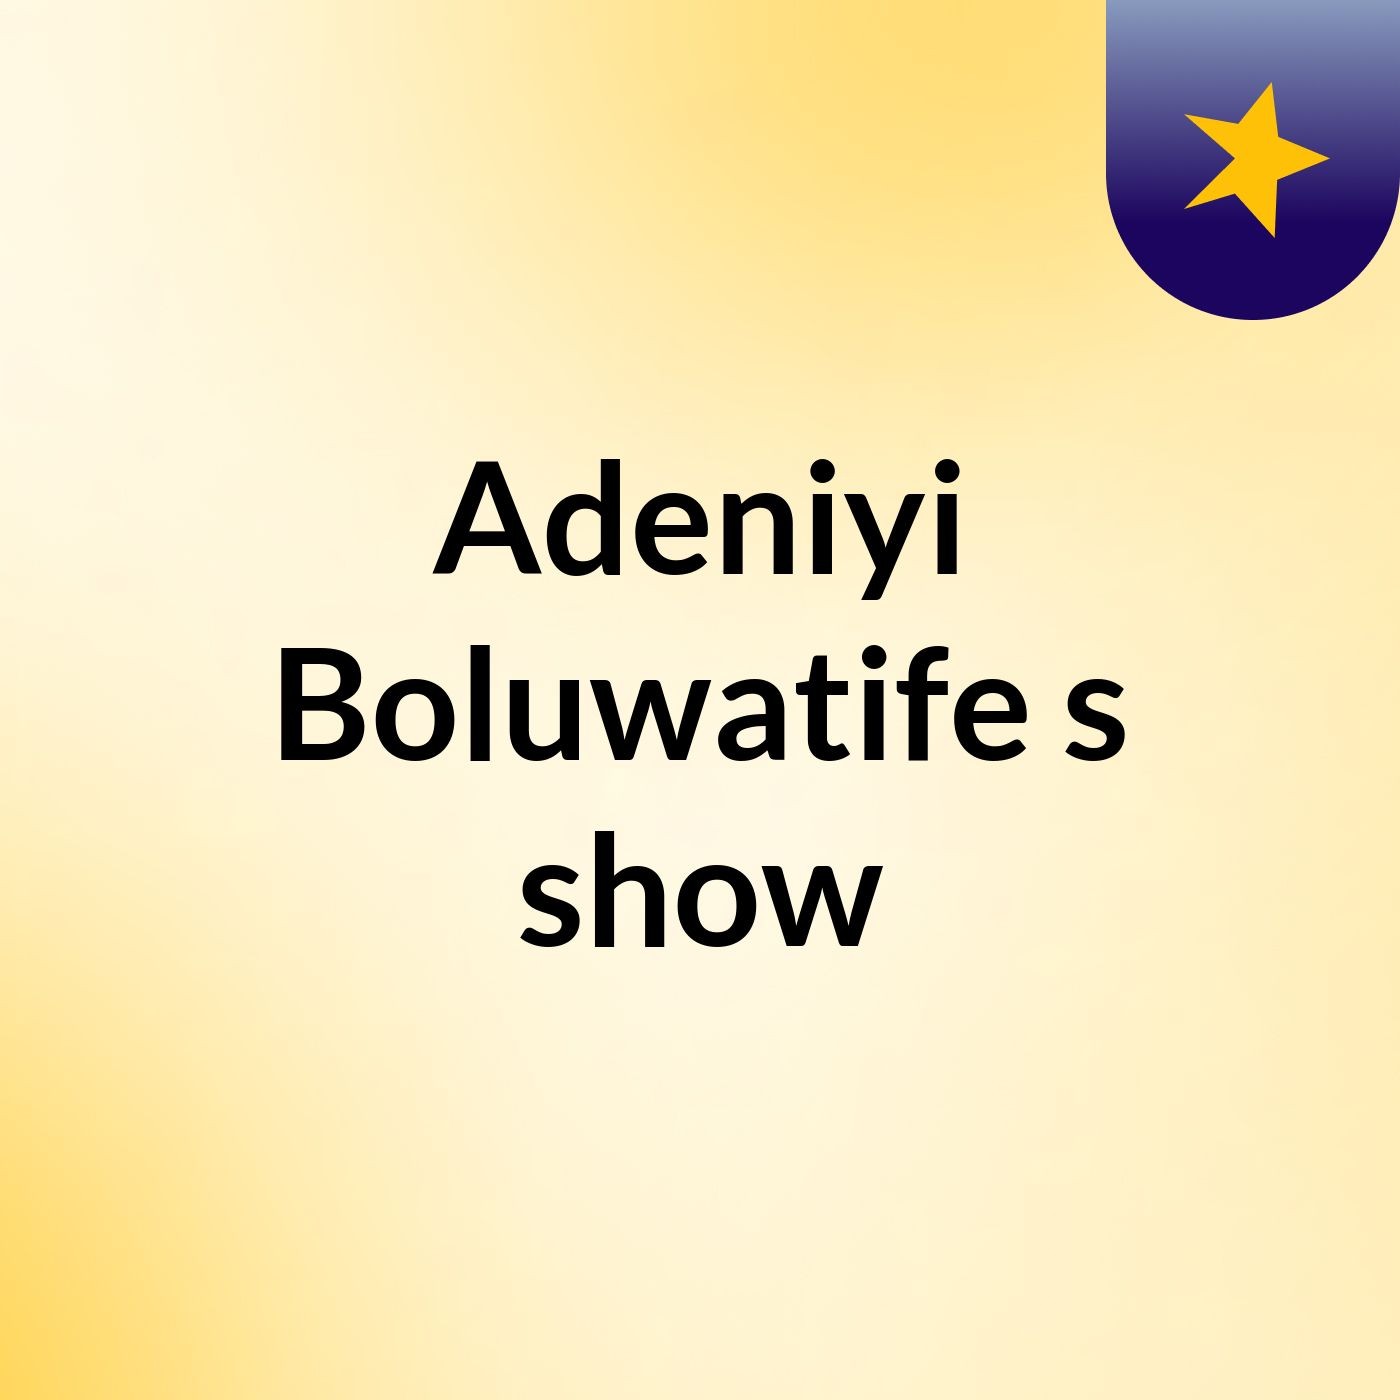 Adeniyi Boluwatife's show